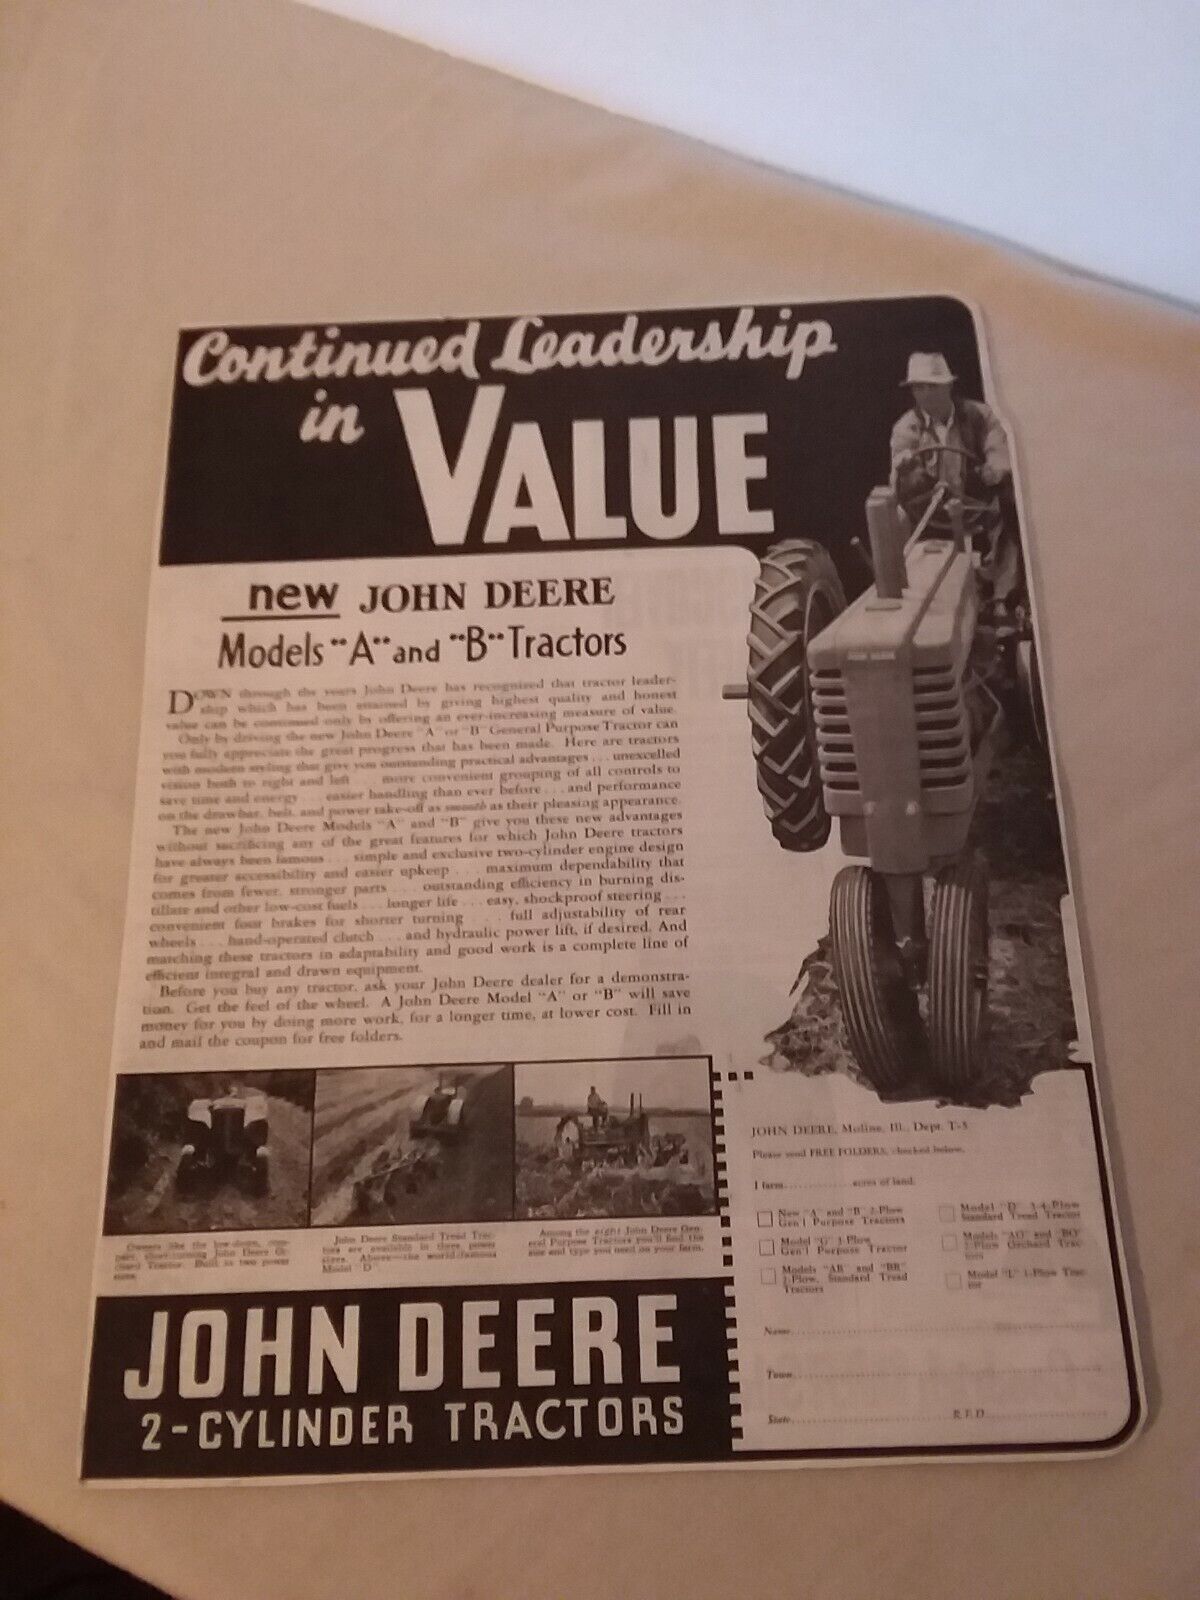 New John Deere Models And B Tractors Advertisements 